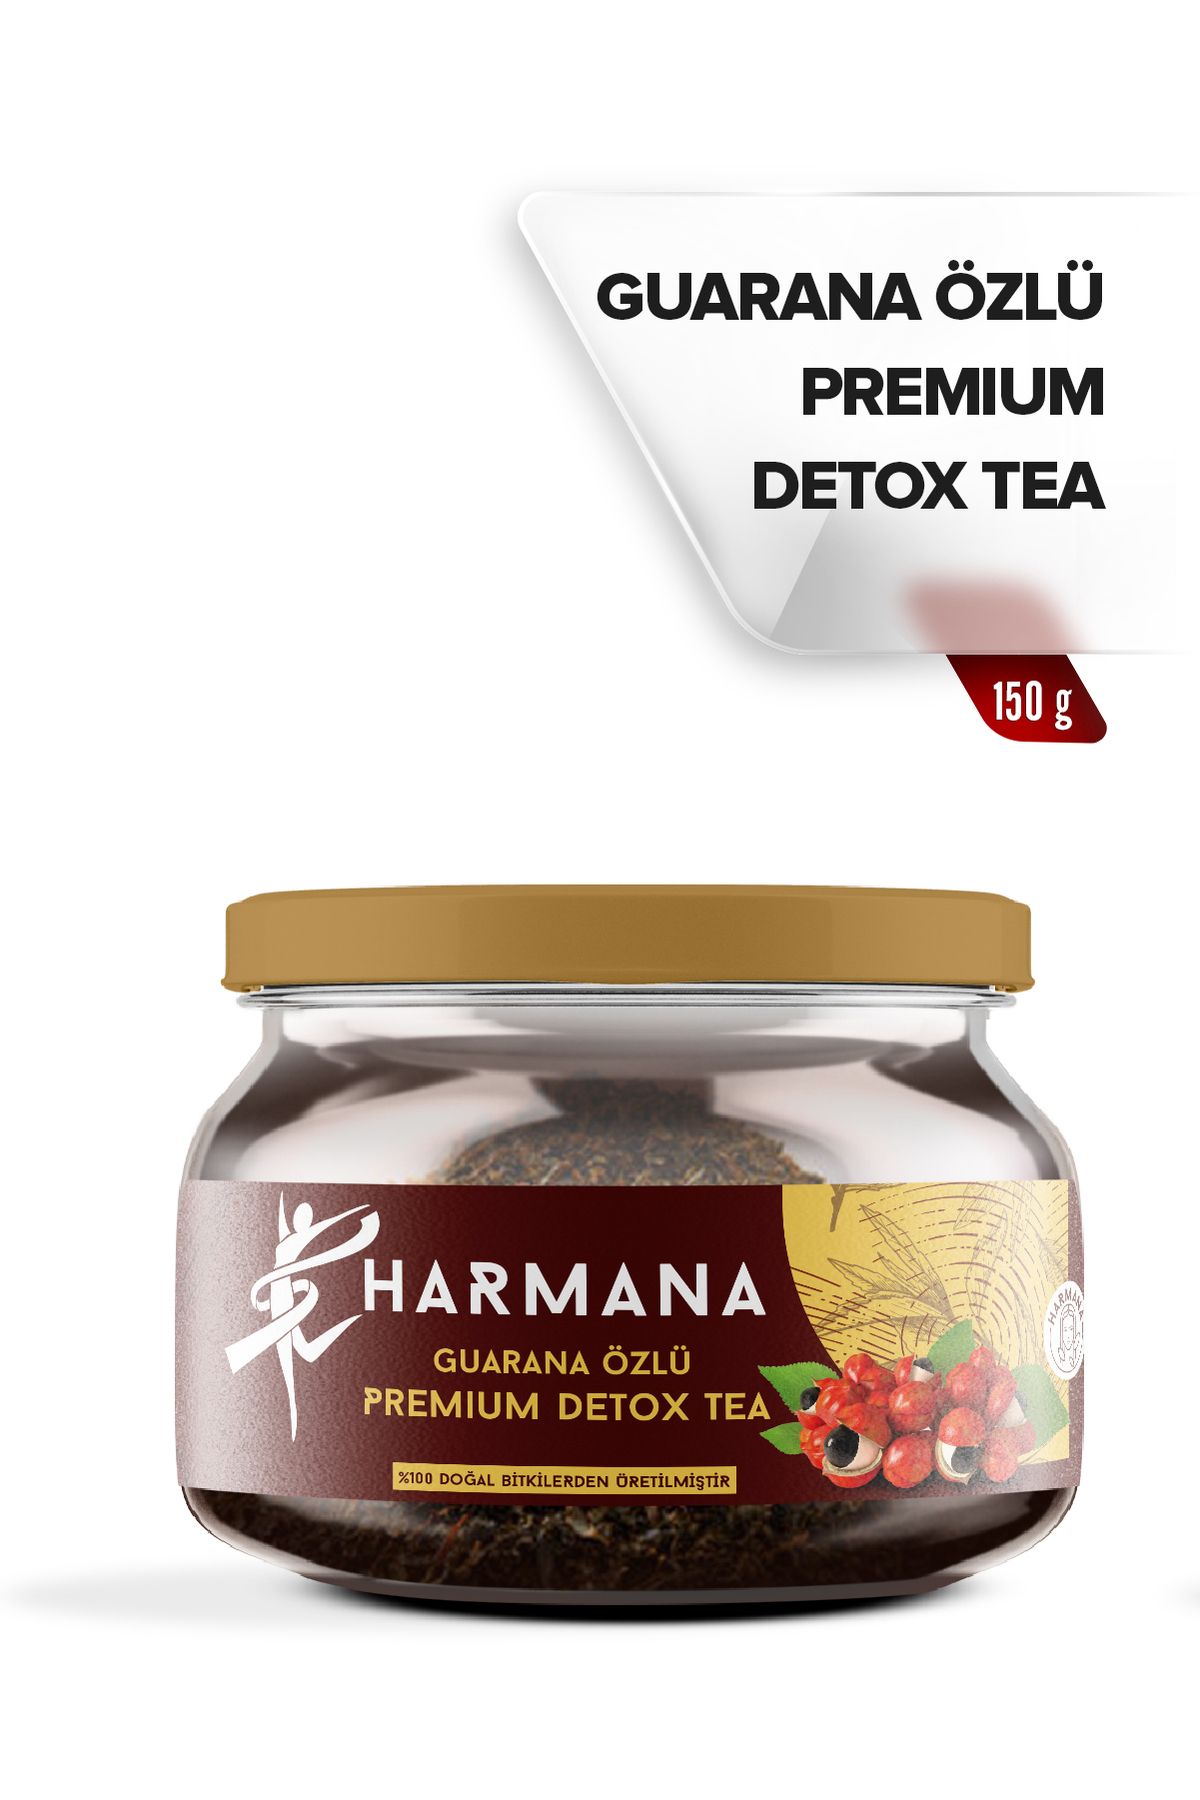 HARMANA Guarana Özlü Premium Detox Tea 2 Aylık Kullanım 150 Gr